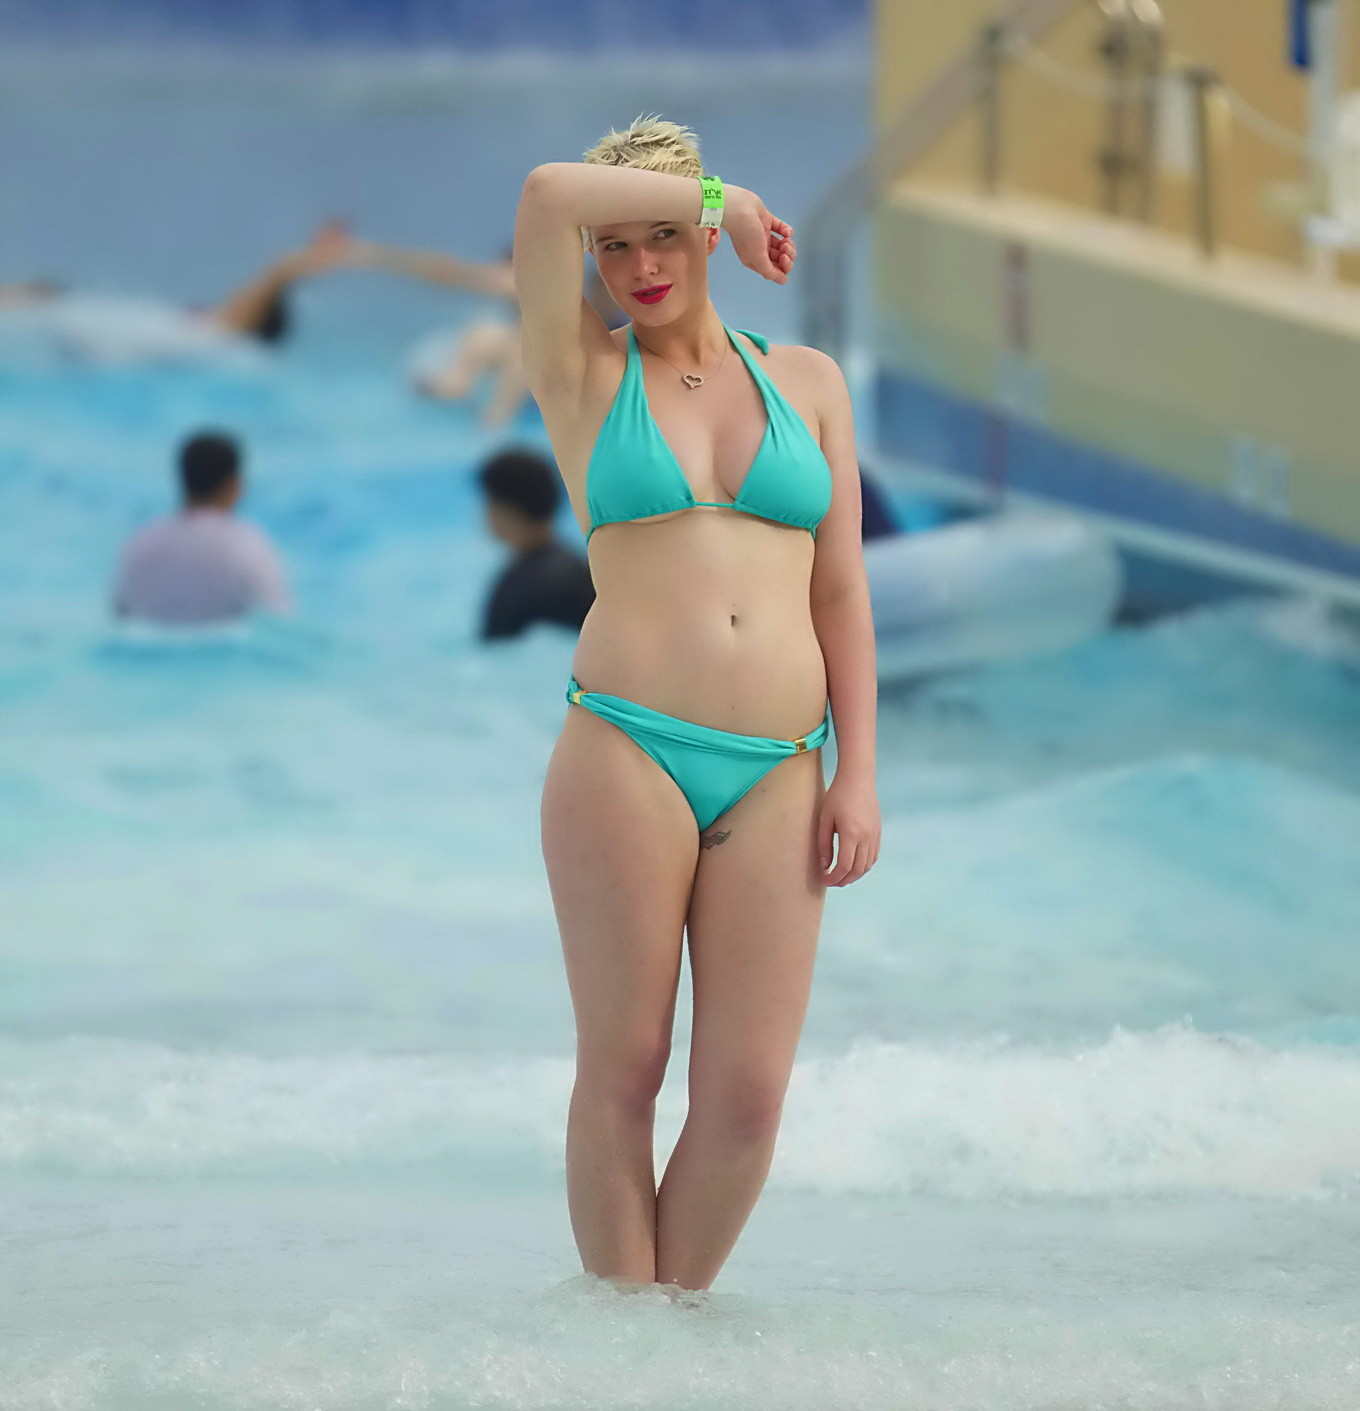 Helen Flanagan wearing tiny light blue bikini at a beach in Dubai #75236381